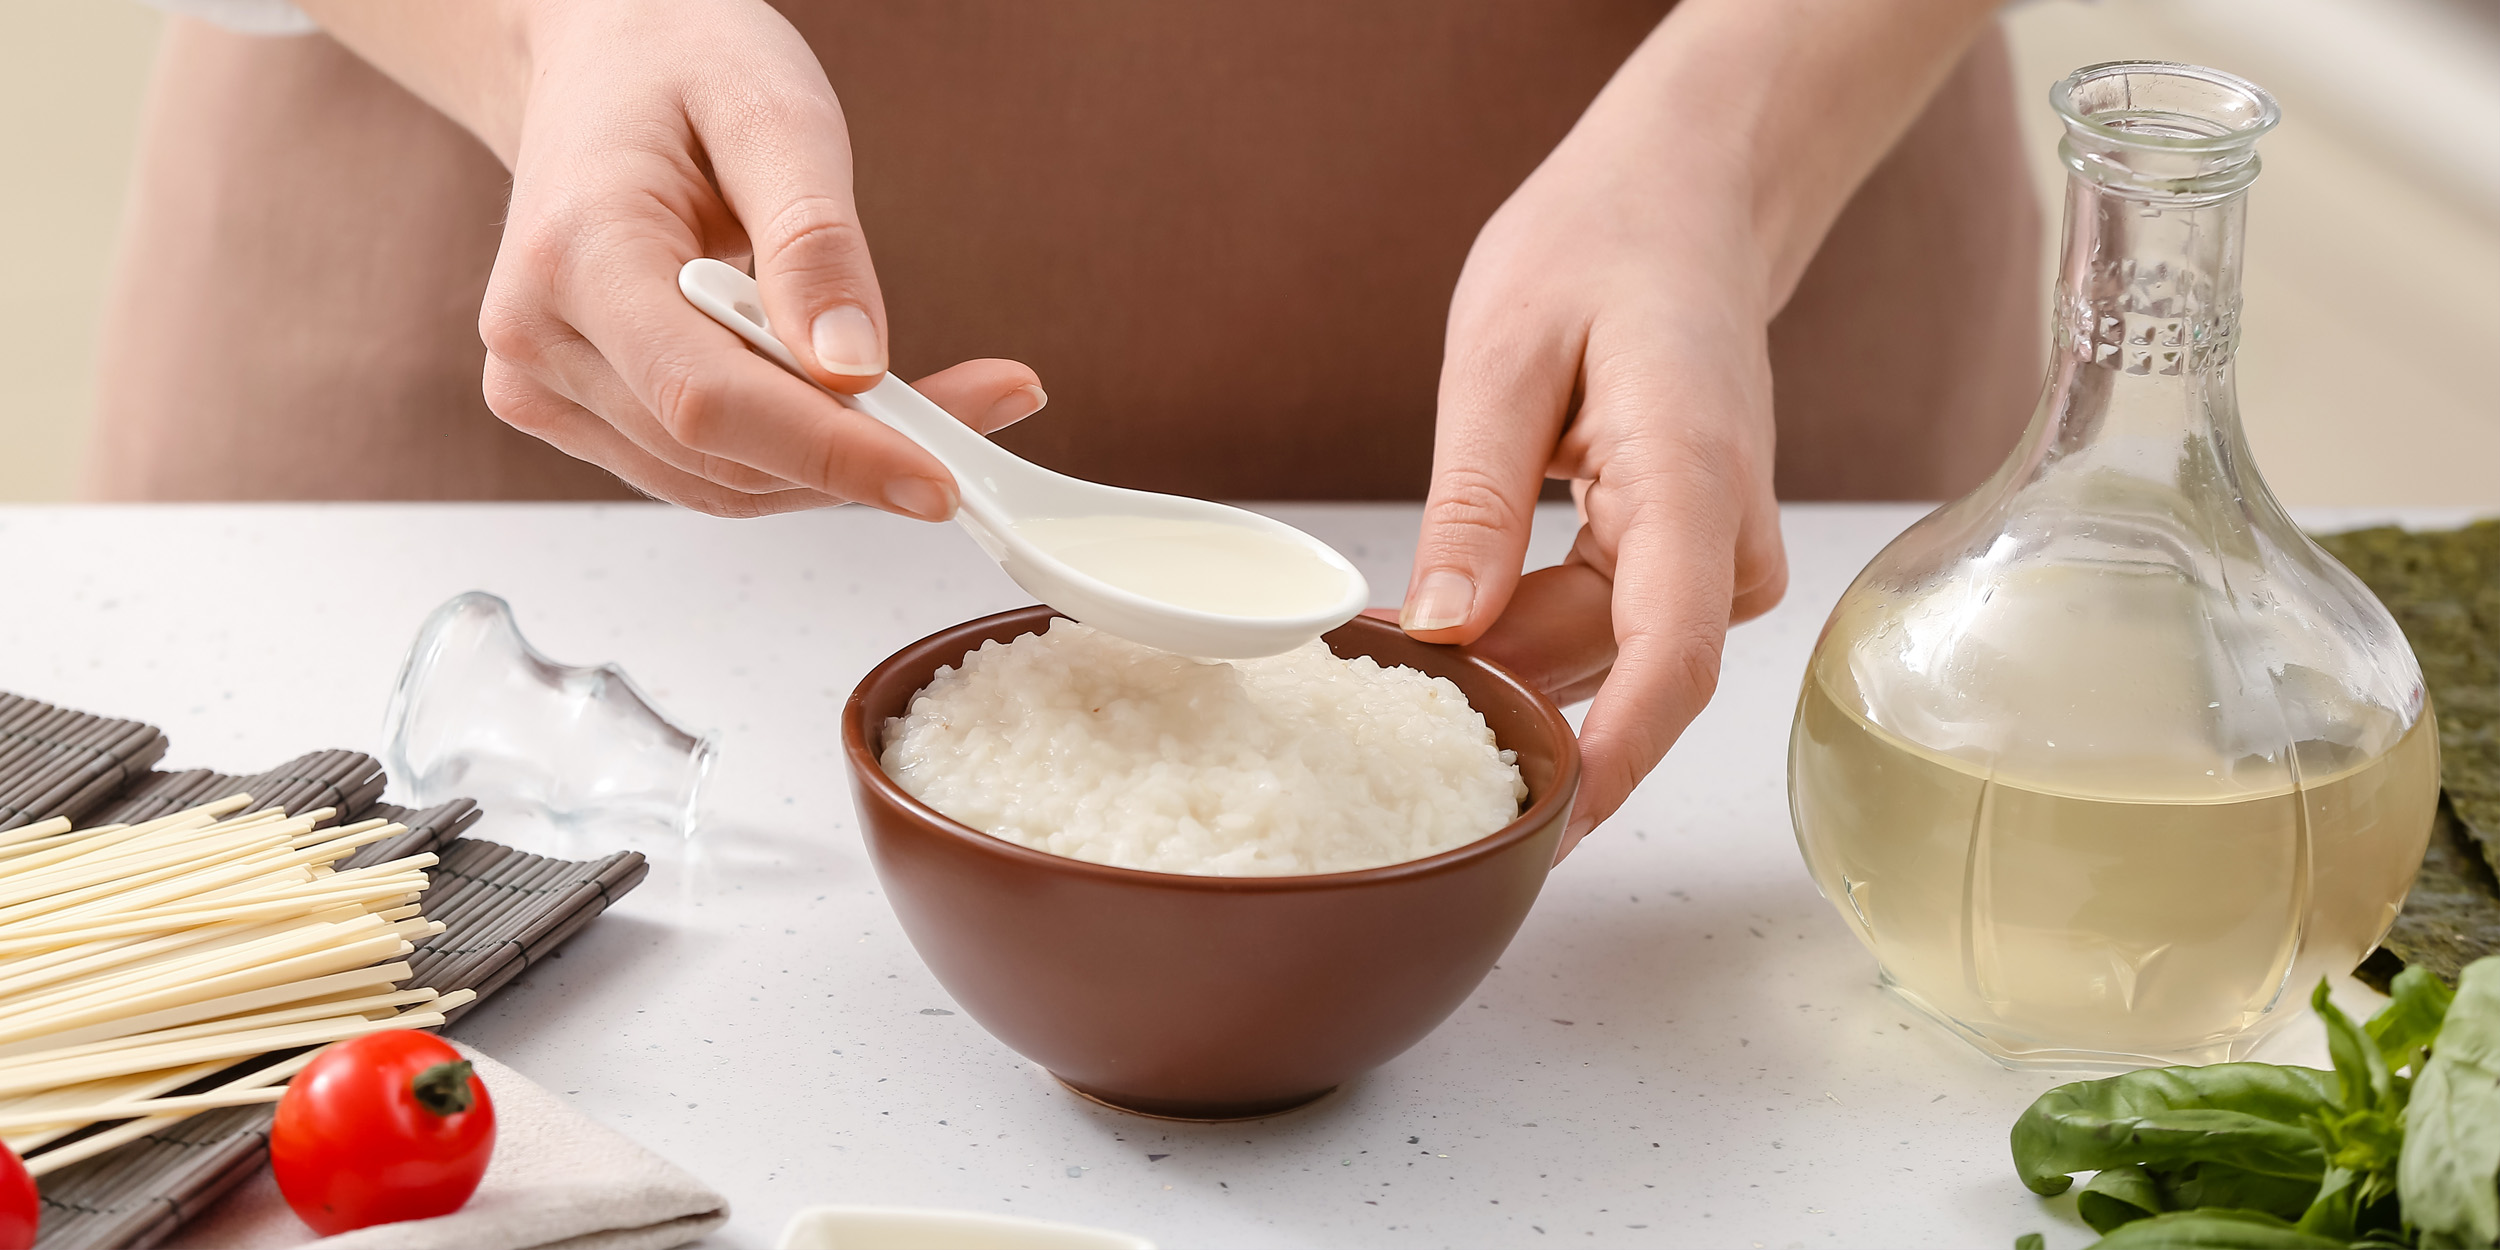 Рисовый уксус - неотъемлемая часть японских блюд: суши и роллов